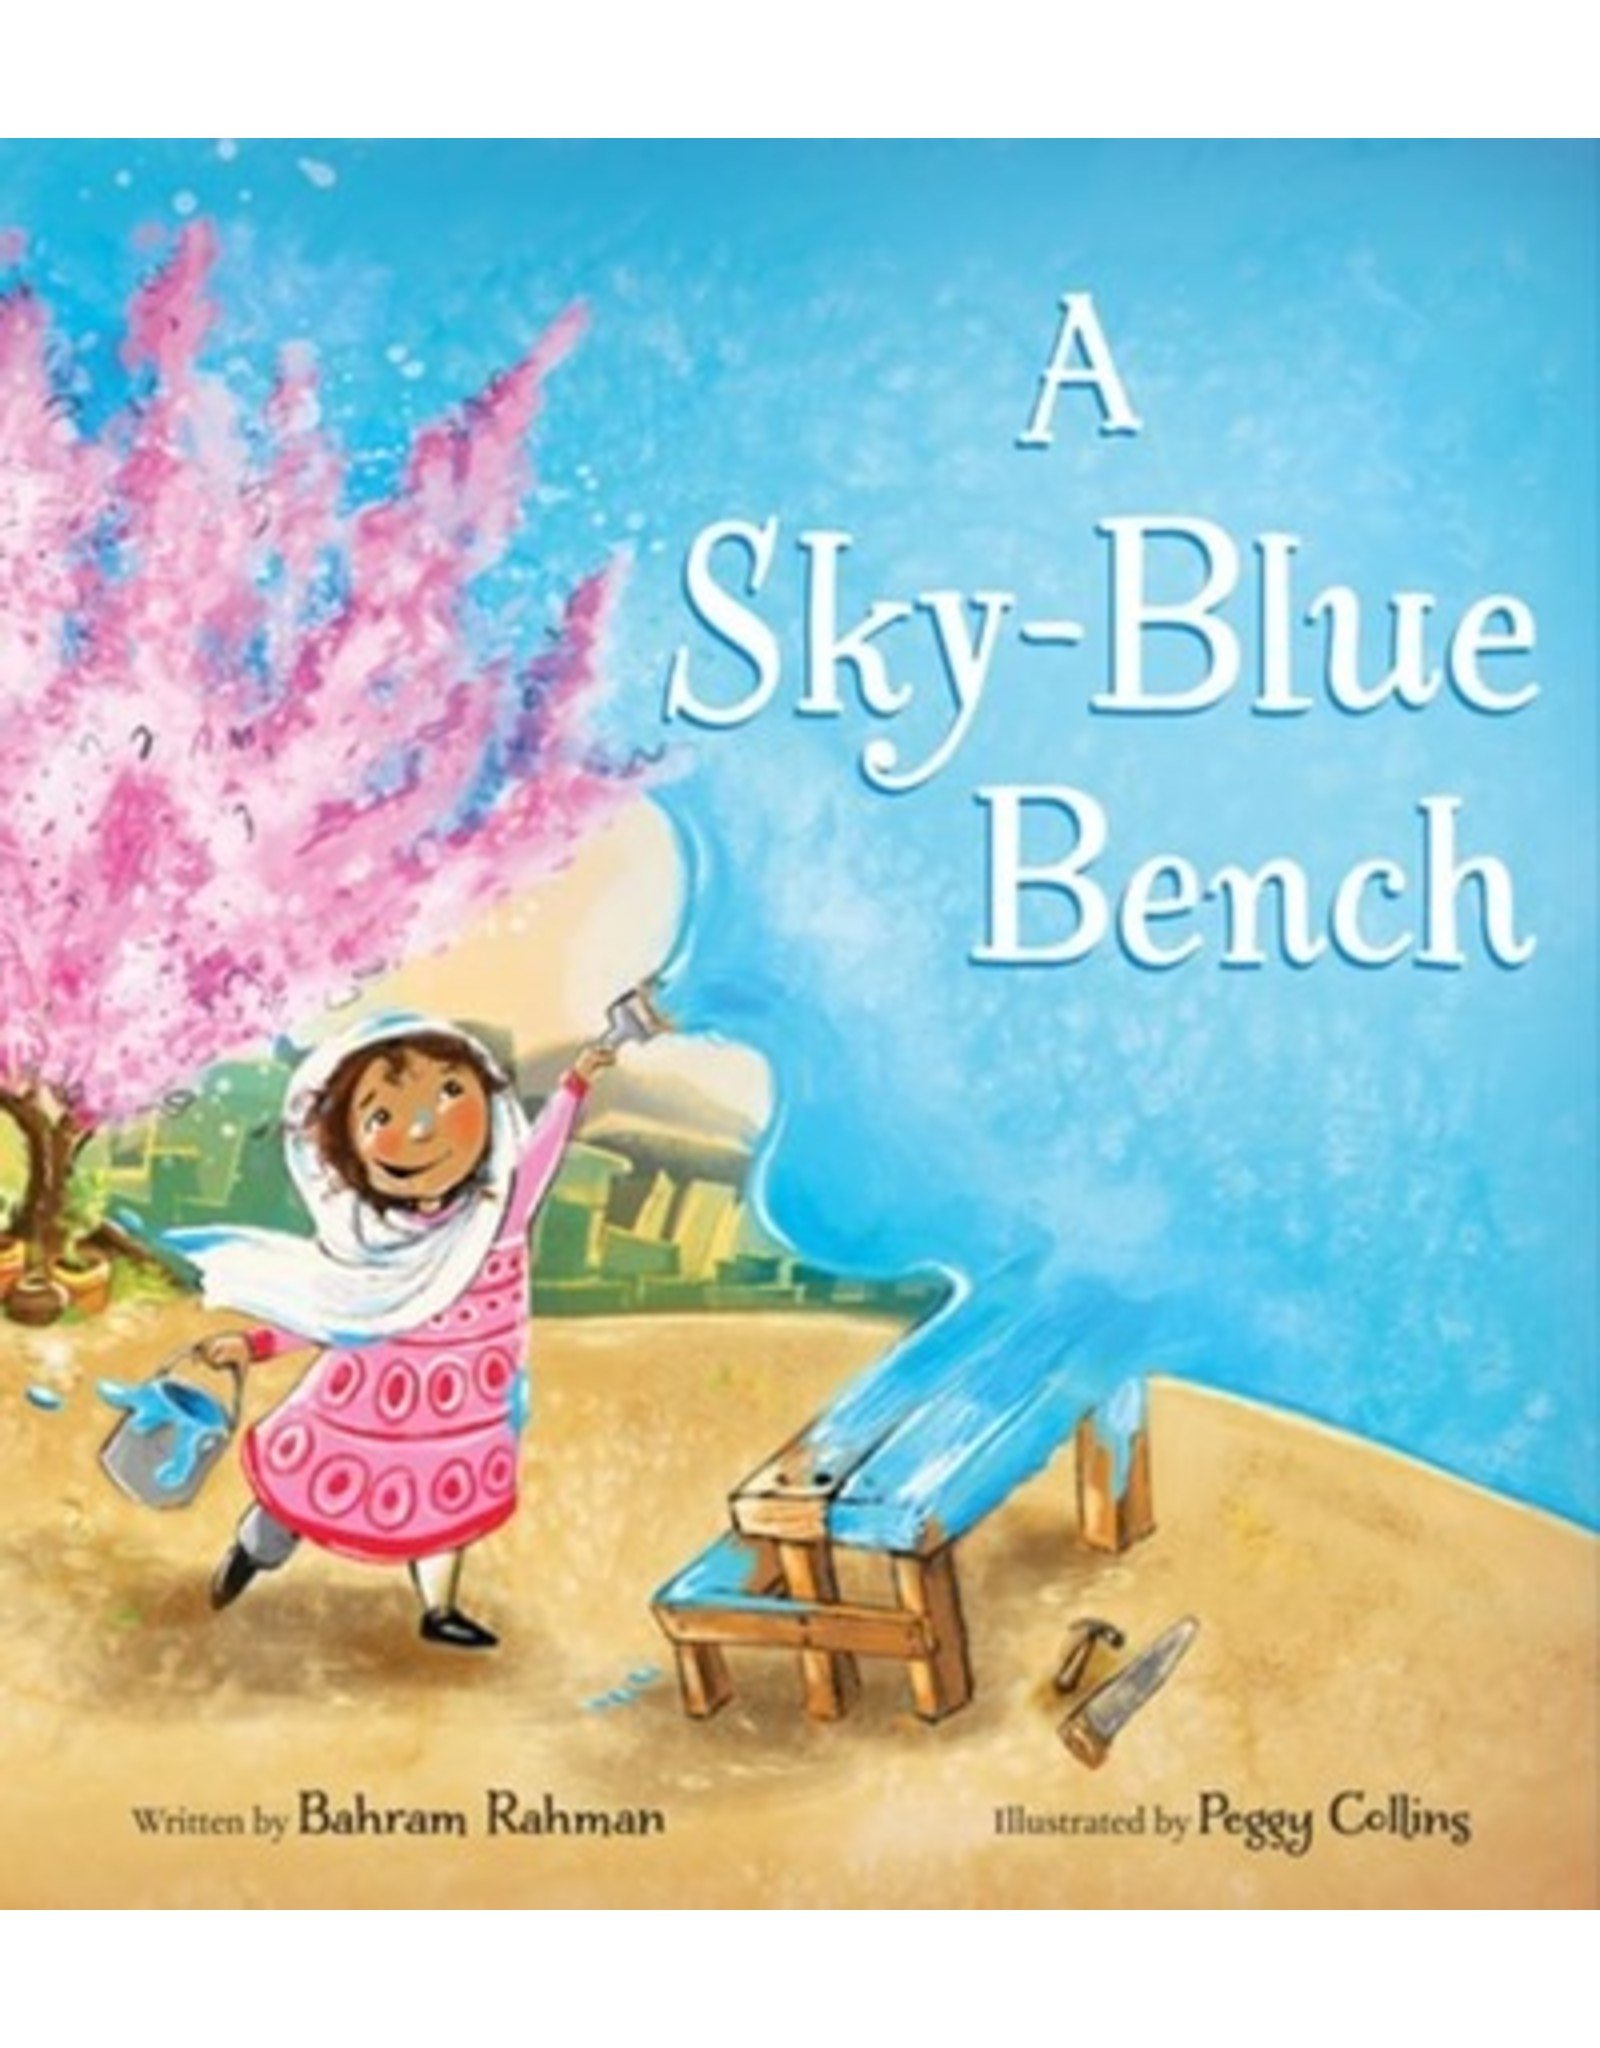 Books A Sky-Blue Bench  written by Bahram Rahman